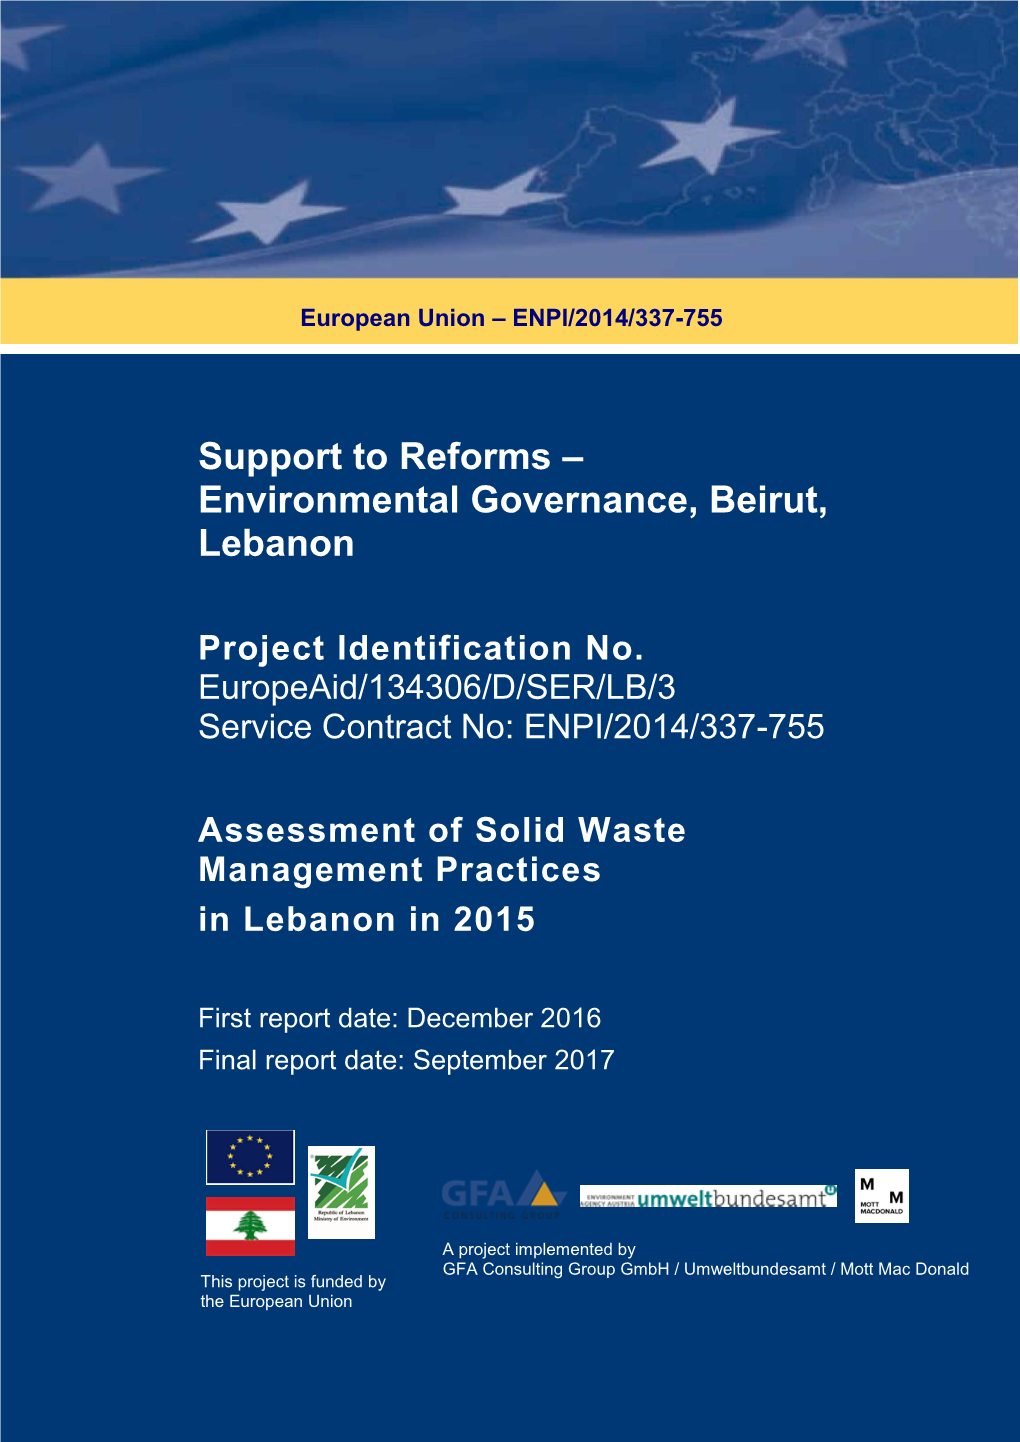 Environmental Governance, Beirut, Lebanon